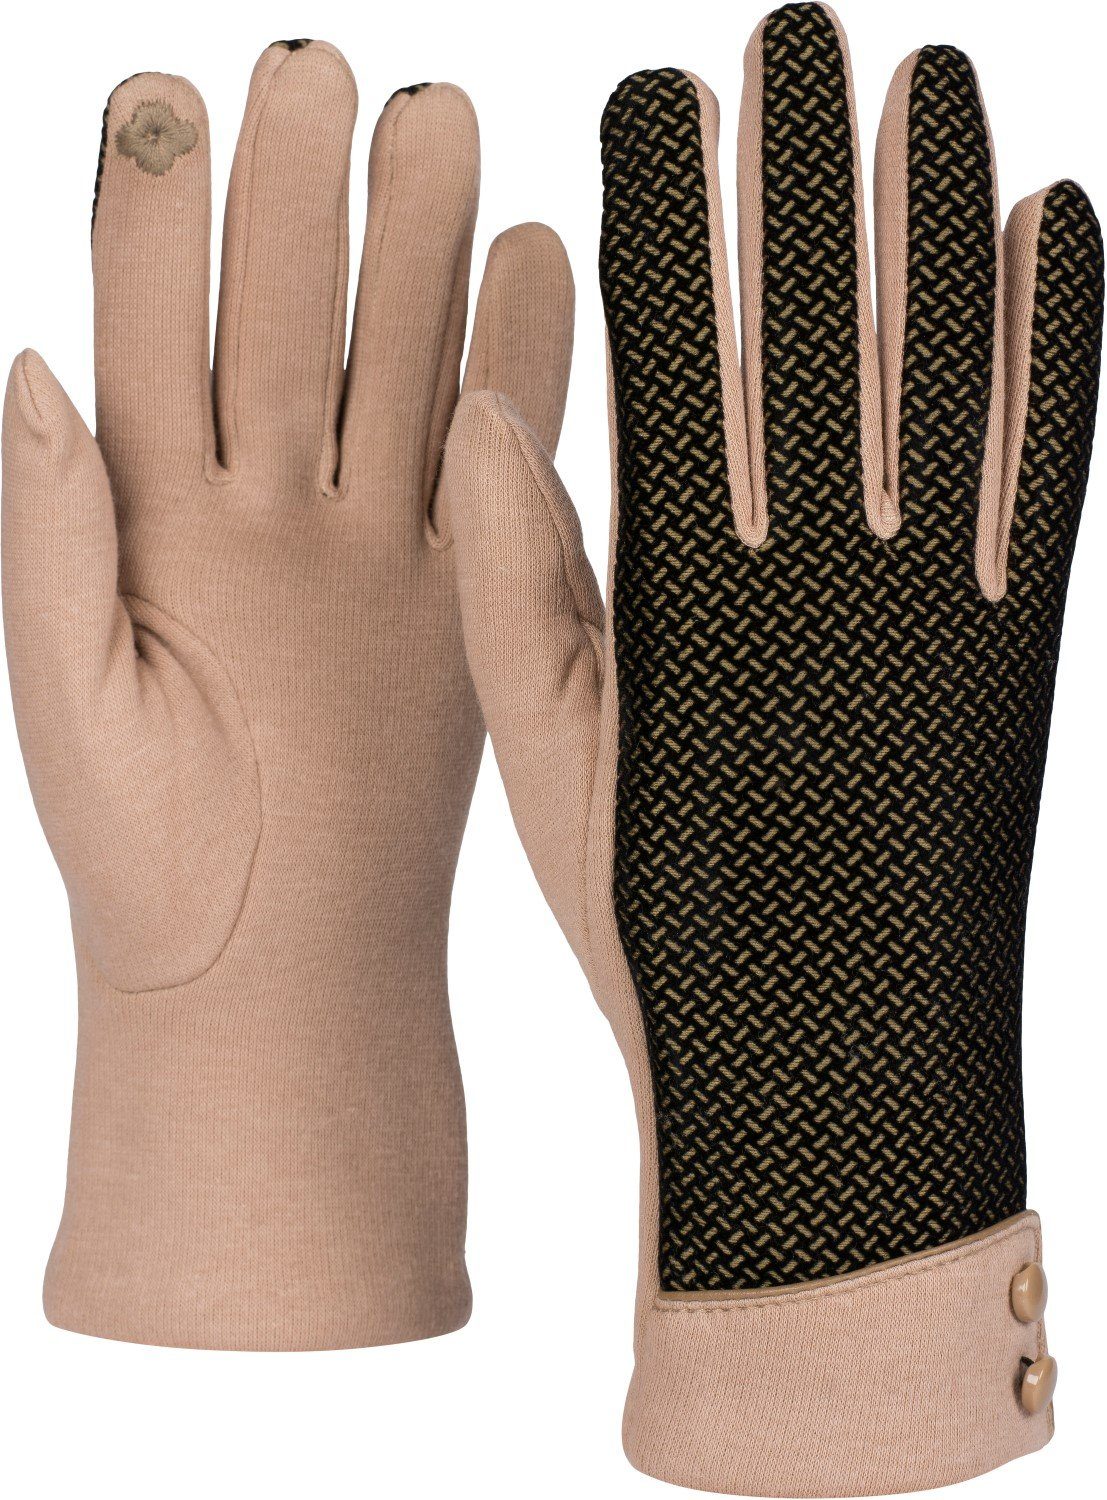 styleBREAKER Handschuhe mit weichem Baumwollhandschuhe Muster Hellbraun Touchscreen Riffel